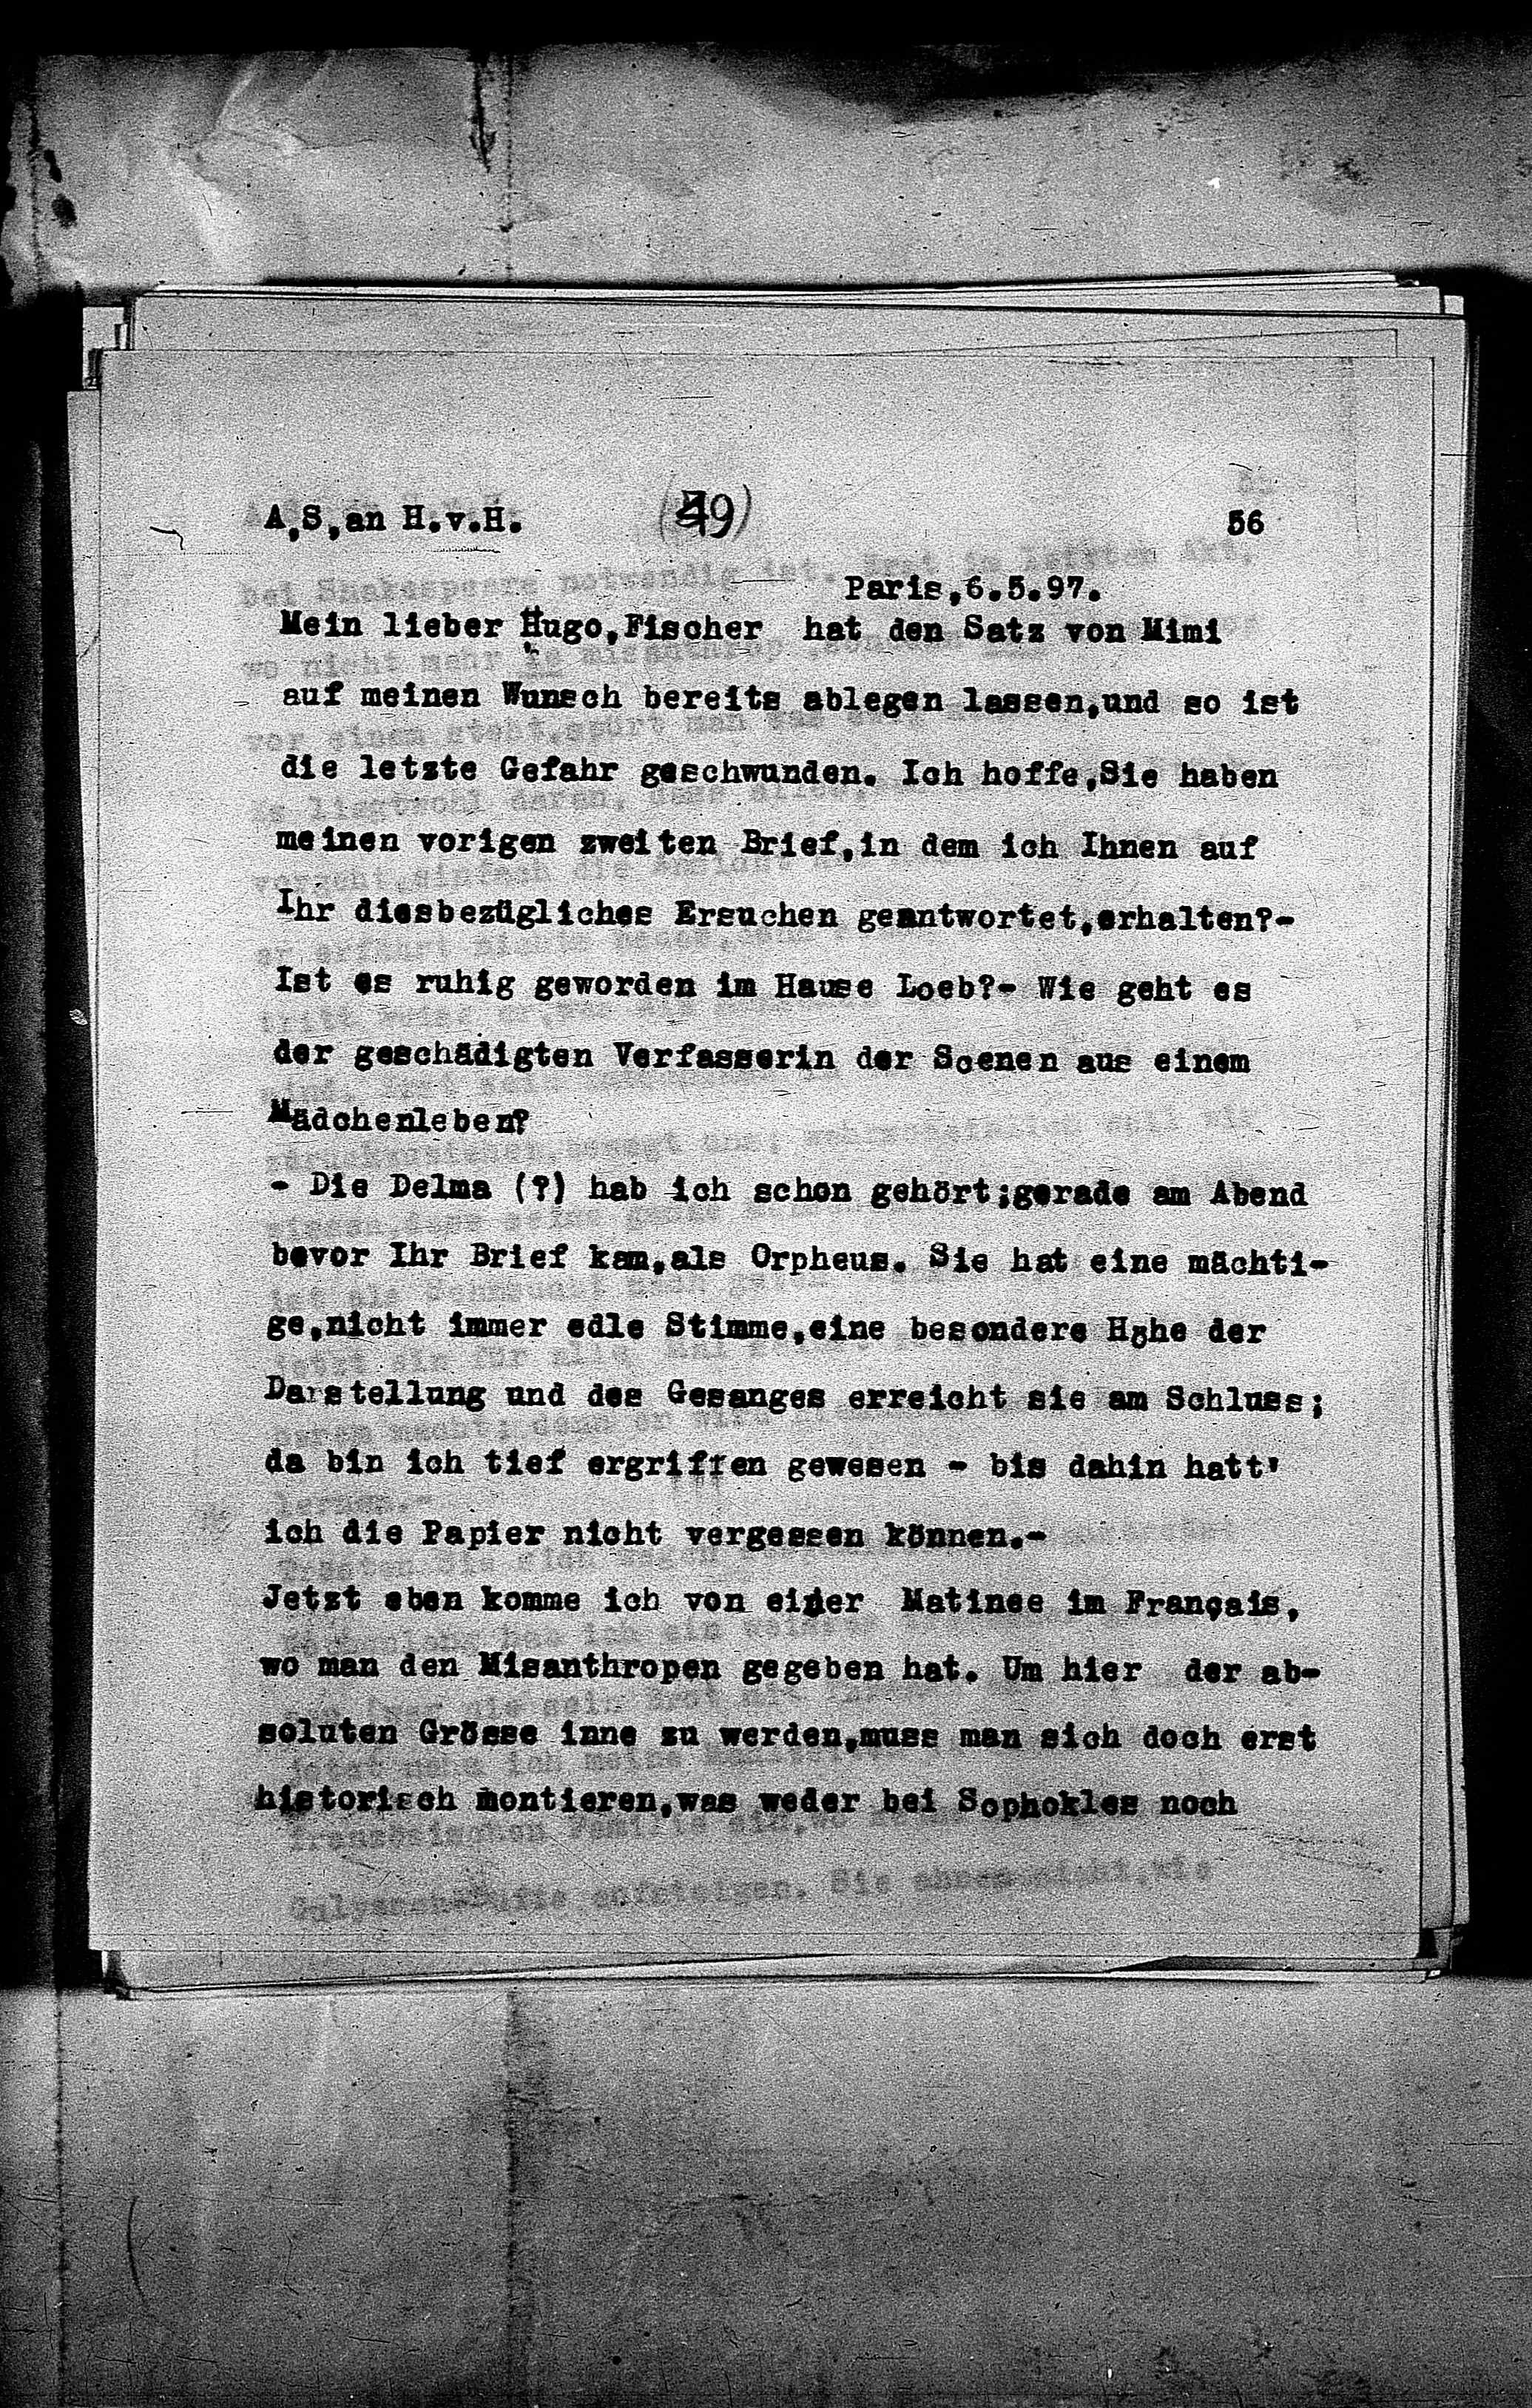 Vorschaubild für Hofmannsthal, Hugo von_AS an HvH Abschrift, HvH an AS, Originale (Mikrofilm 38), Seite 59